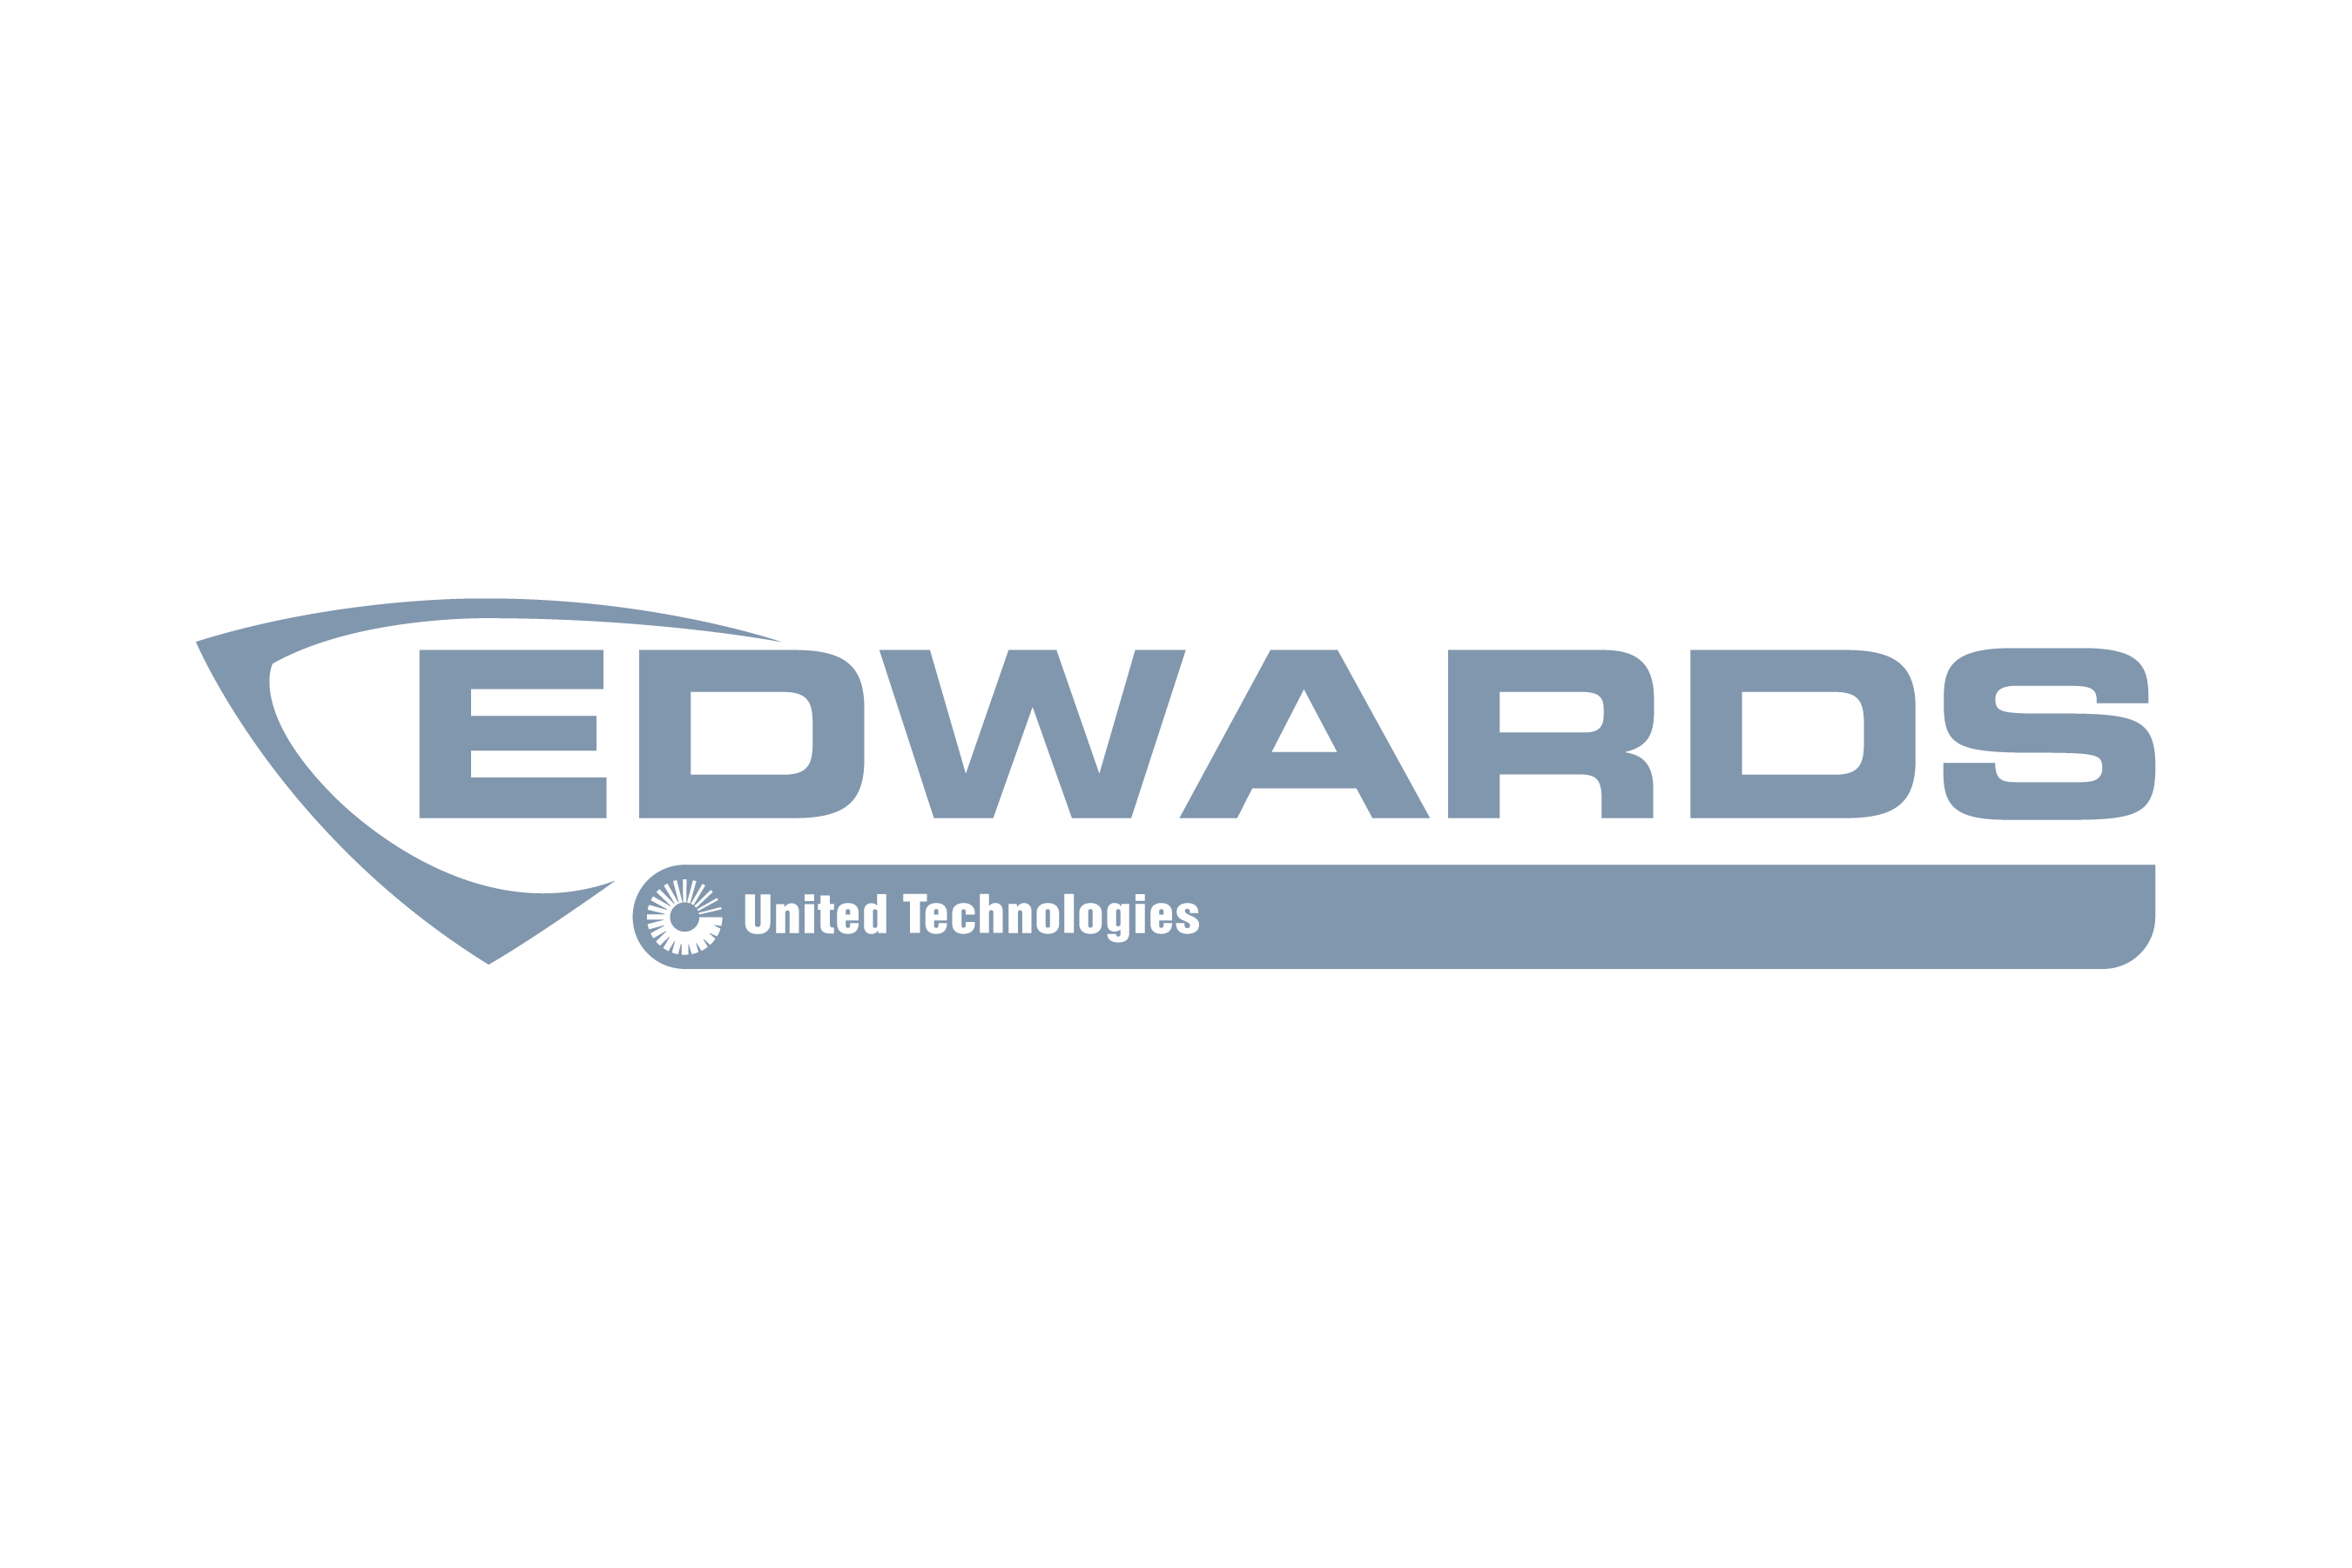 Edwards